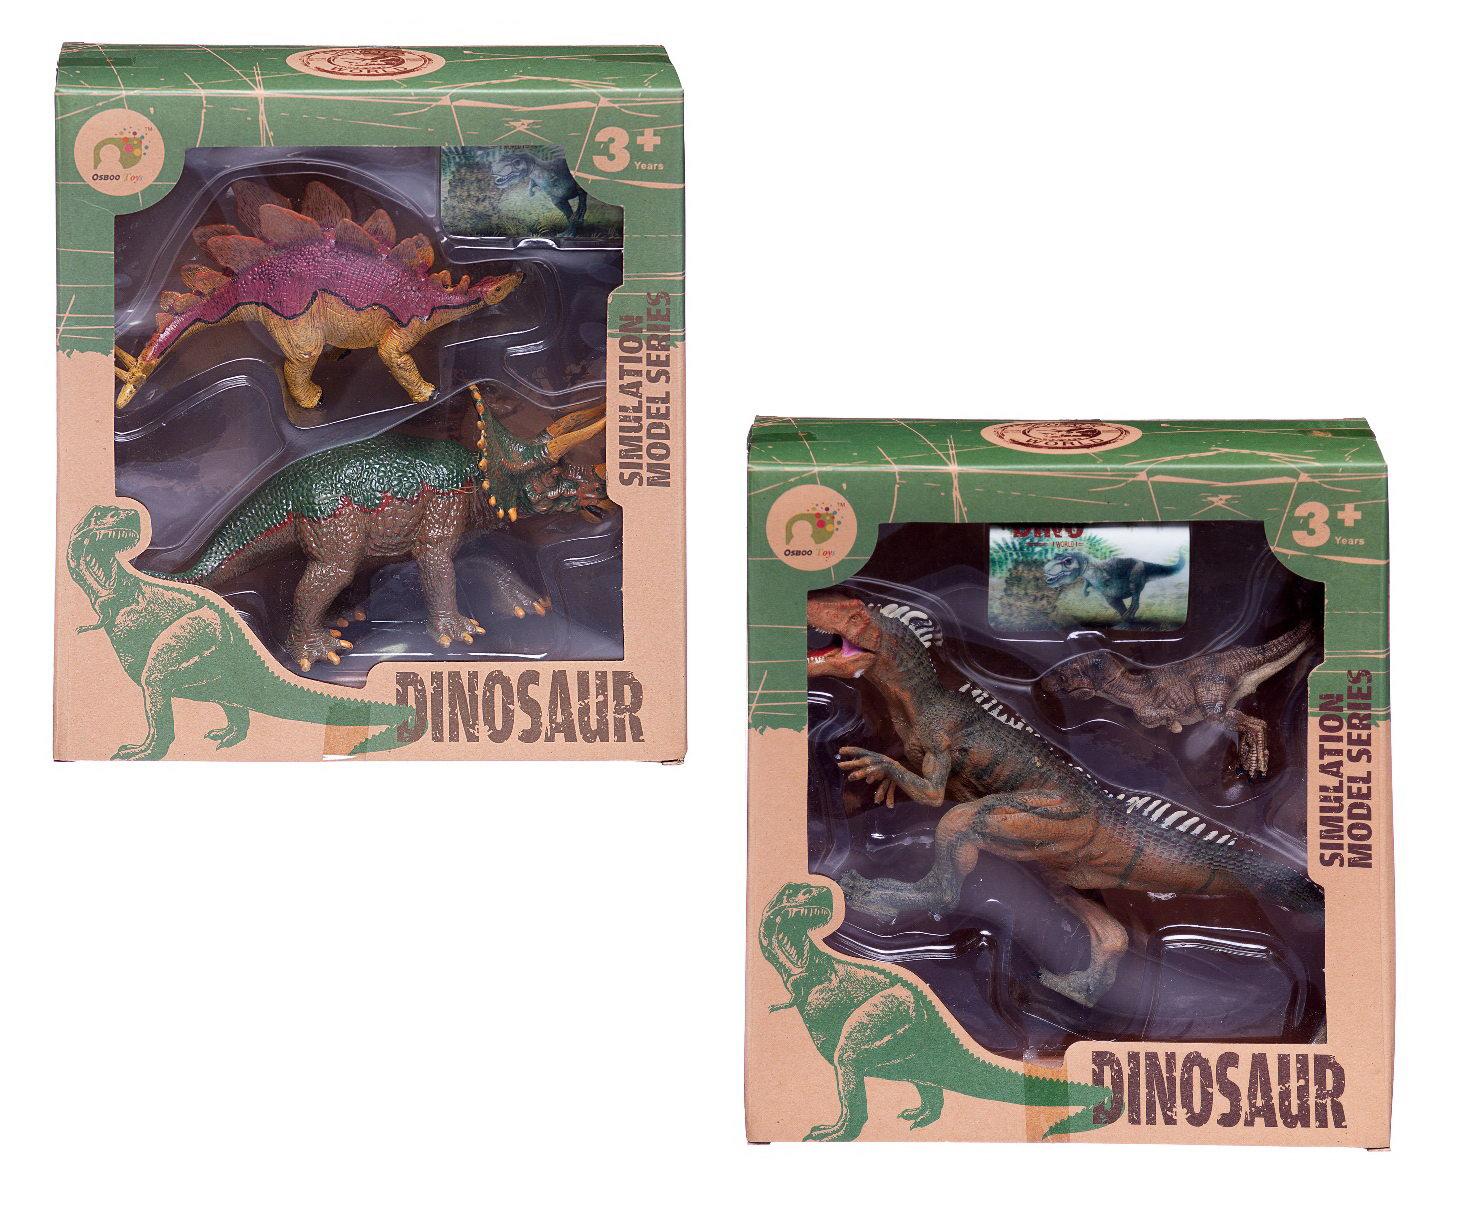 5 серию динозавра. WA-14612 набор игровой Мои любимые динозавры. Игроленд набор динозавров. Ребенок любит динозавров. Набор динозавров в ассортименте Пластизол 7021.